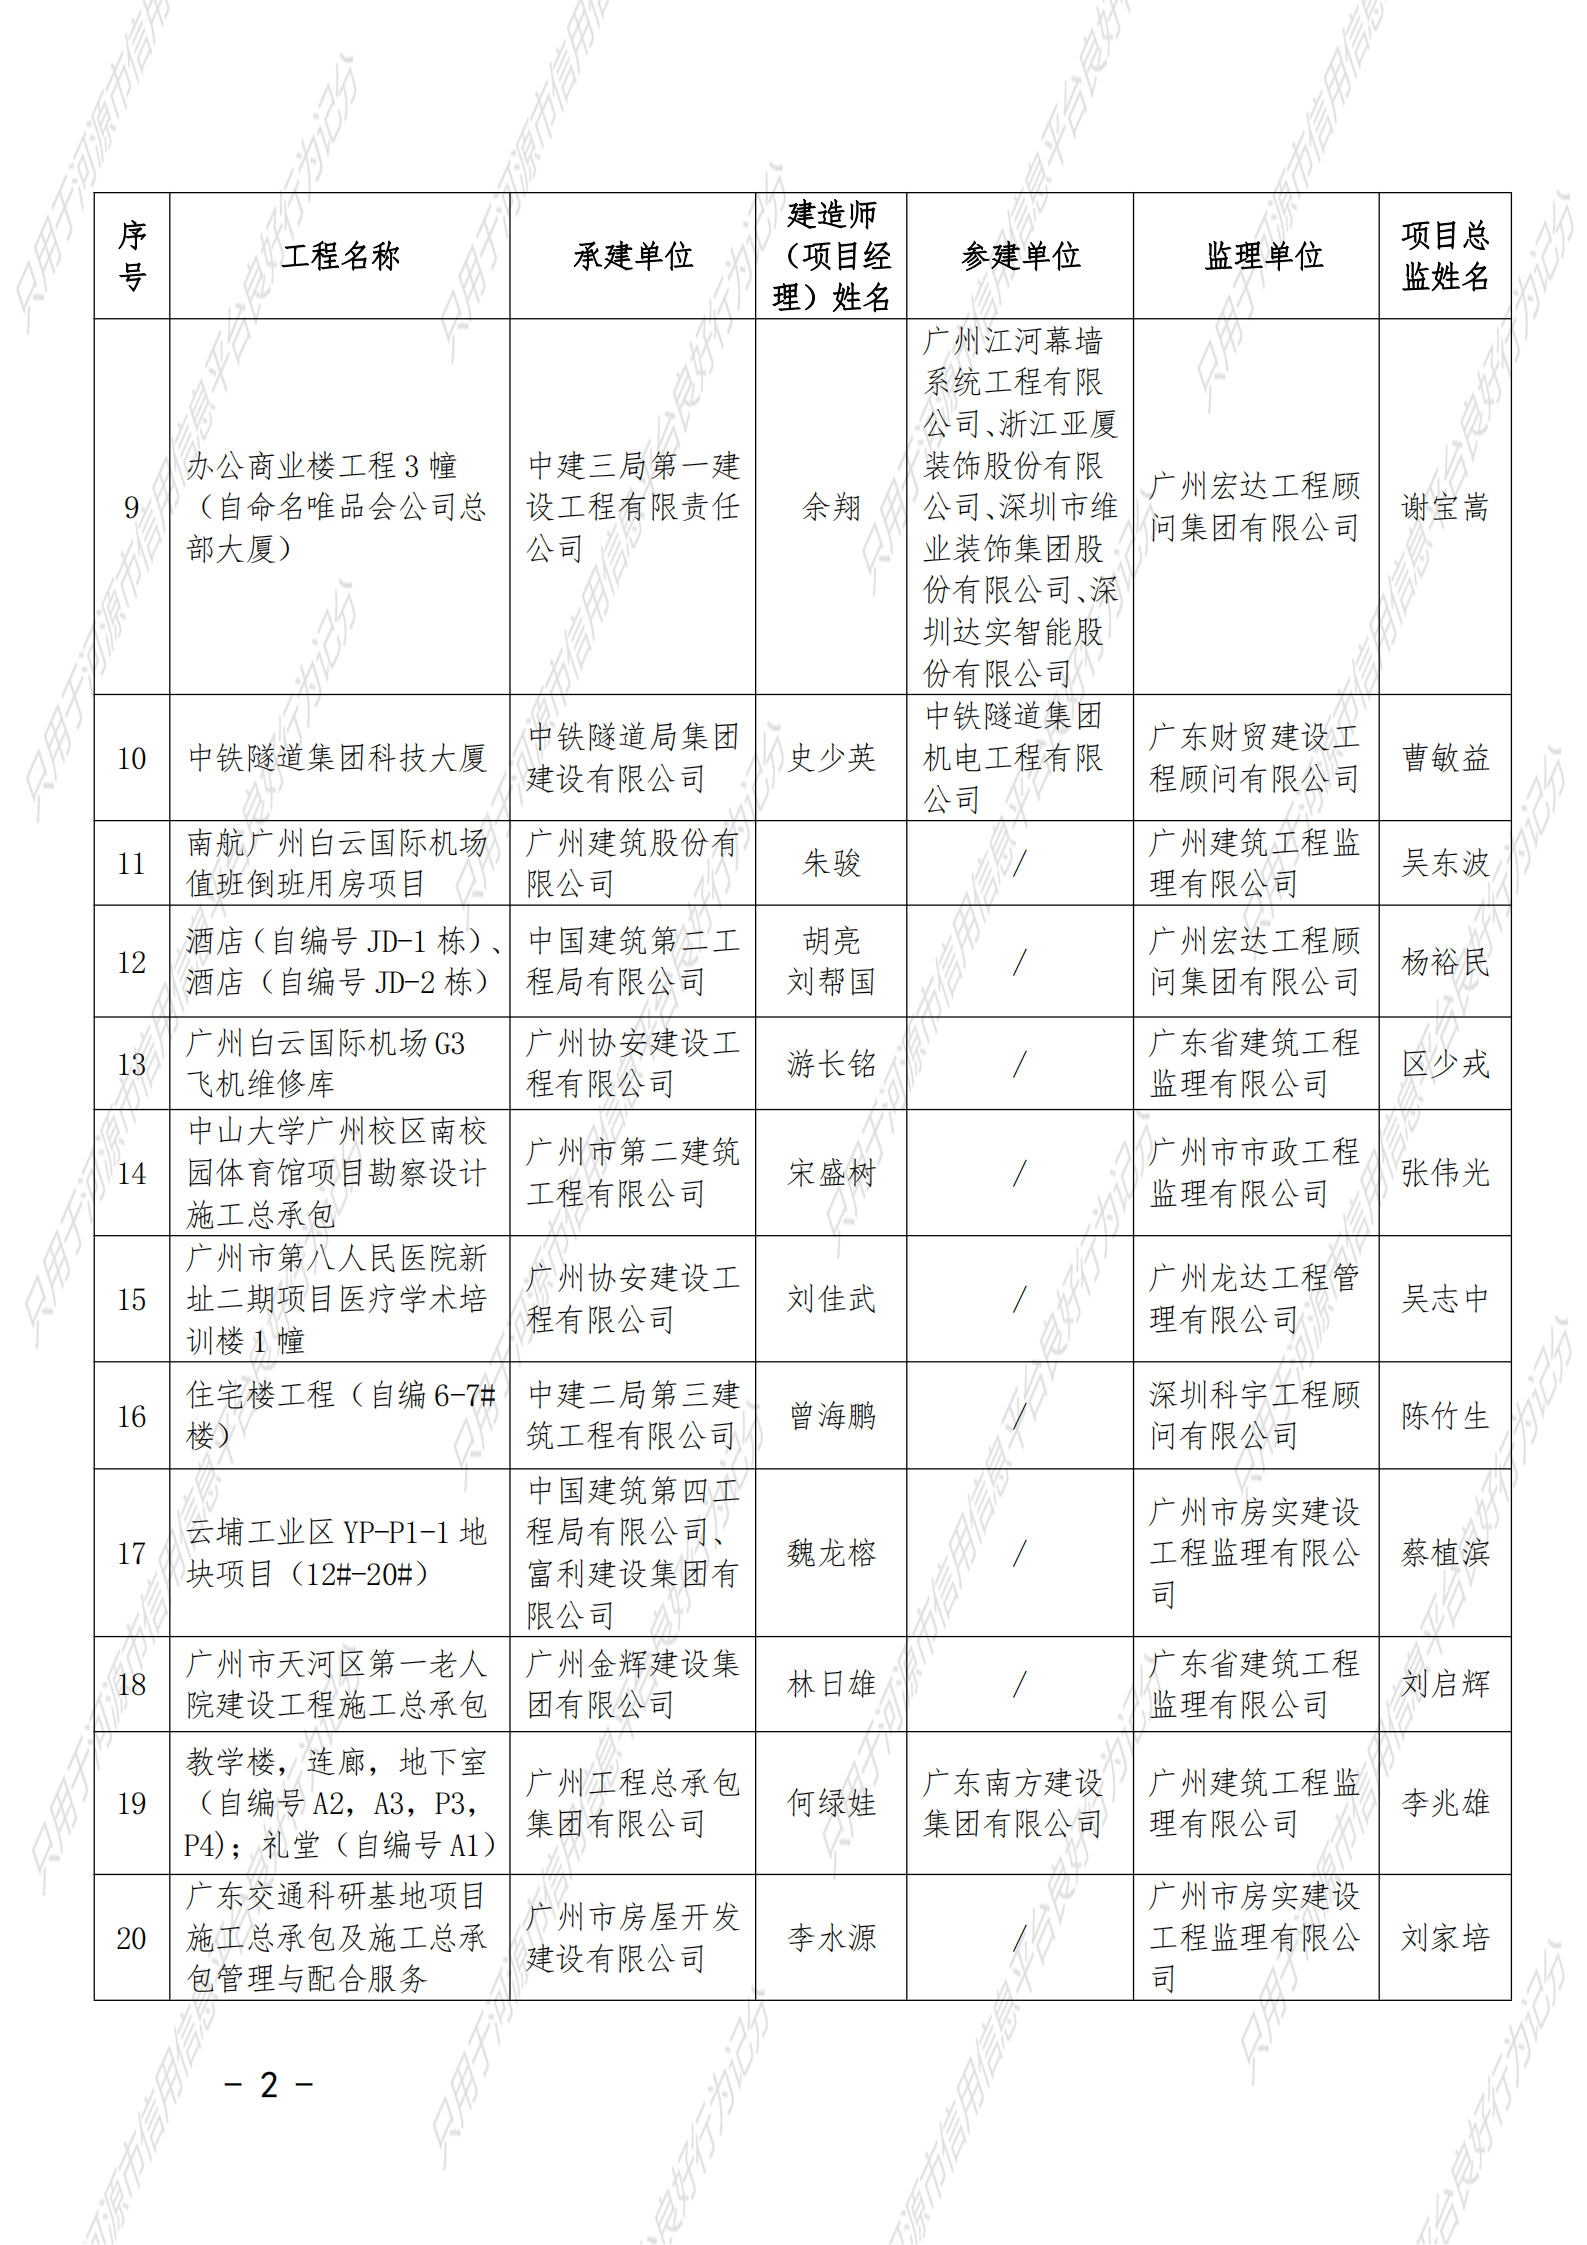 附件 2021年度广东省建设工程优质奖（房屋建筑及专业工程）名单_01